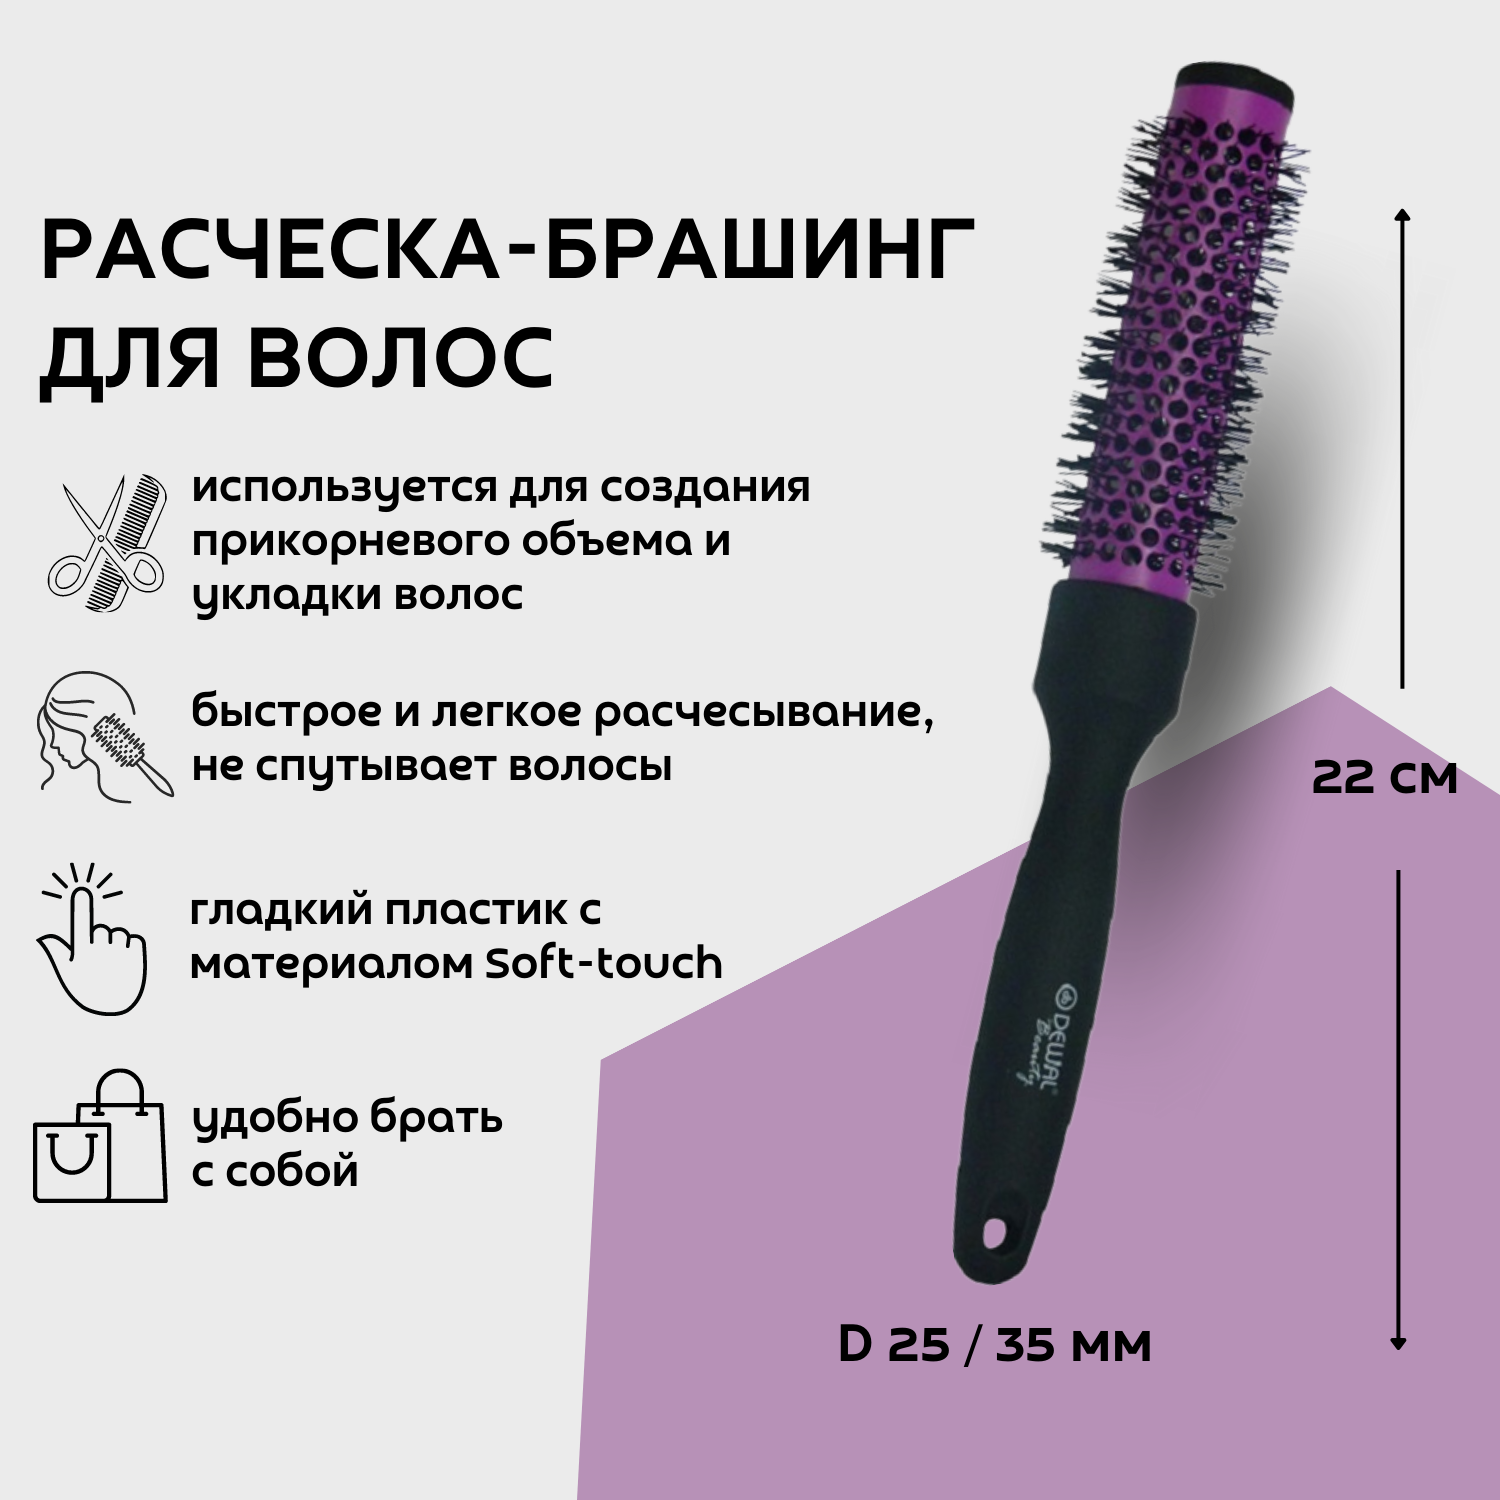 Dewal Beauty Брашинг с покрытием Soft touch, D 25 / 35 мм, 22 см, пластик, цвет черный-фиолетовый (DBBR25)